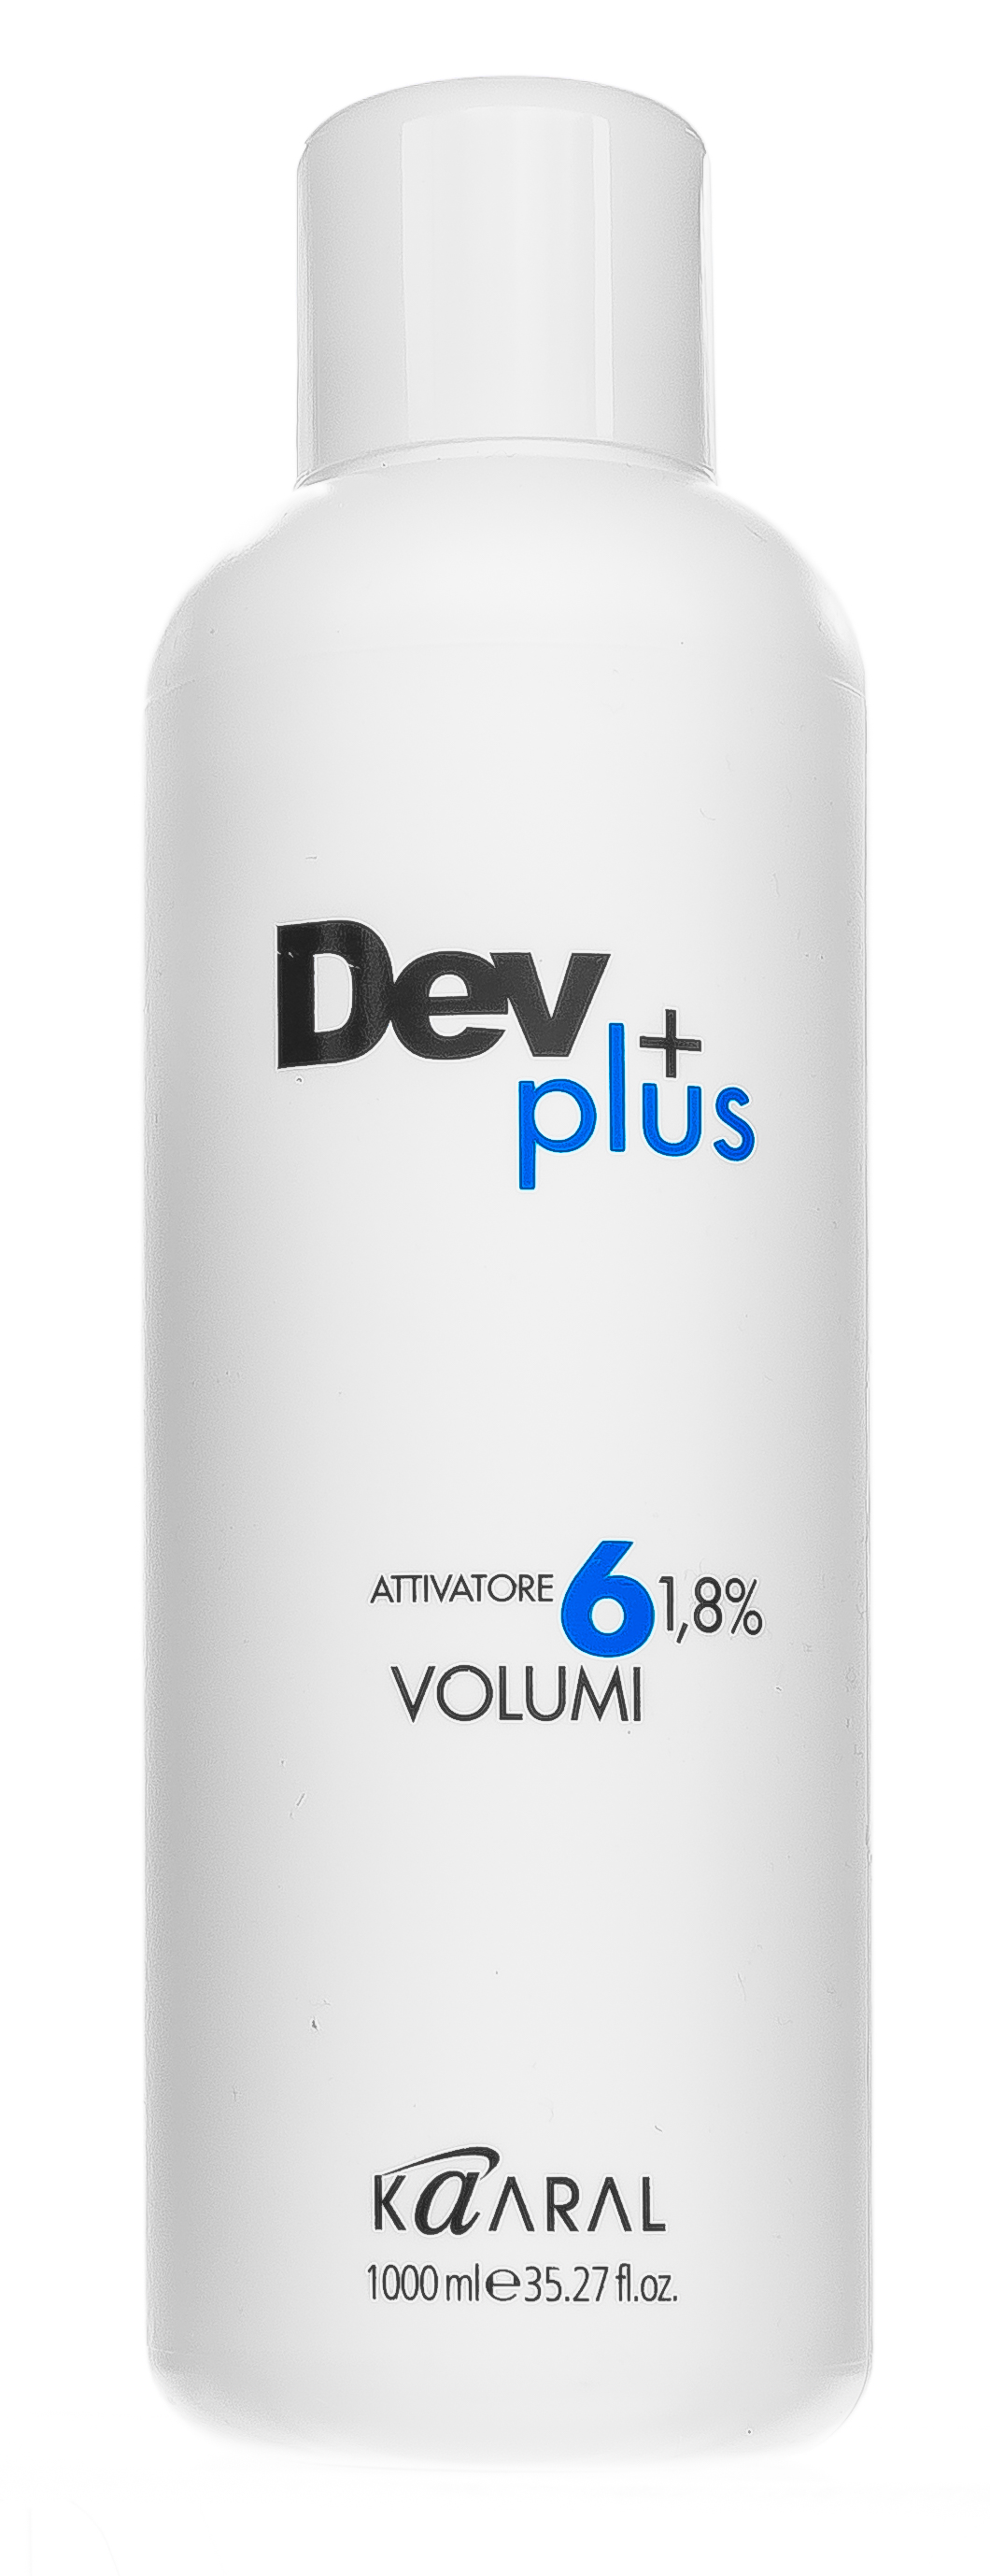 Kaaral Окисляющая эмульсия Dev Plus 1,8% 6 volume, 1000 мл (Kaaral, Dev Plus)